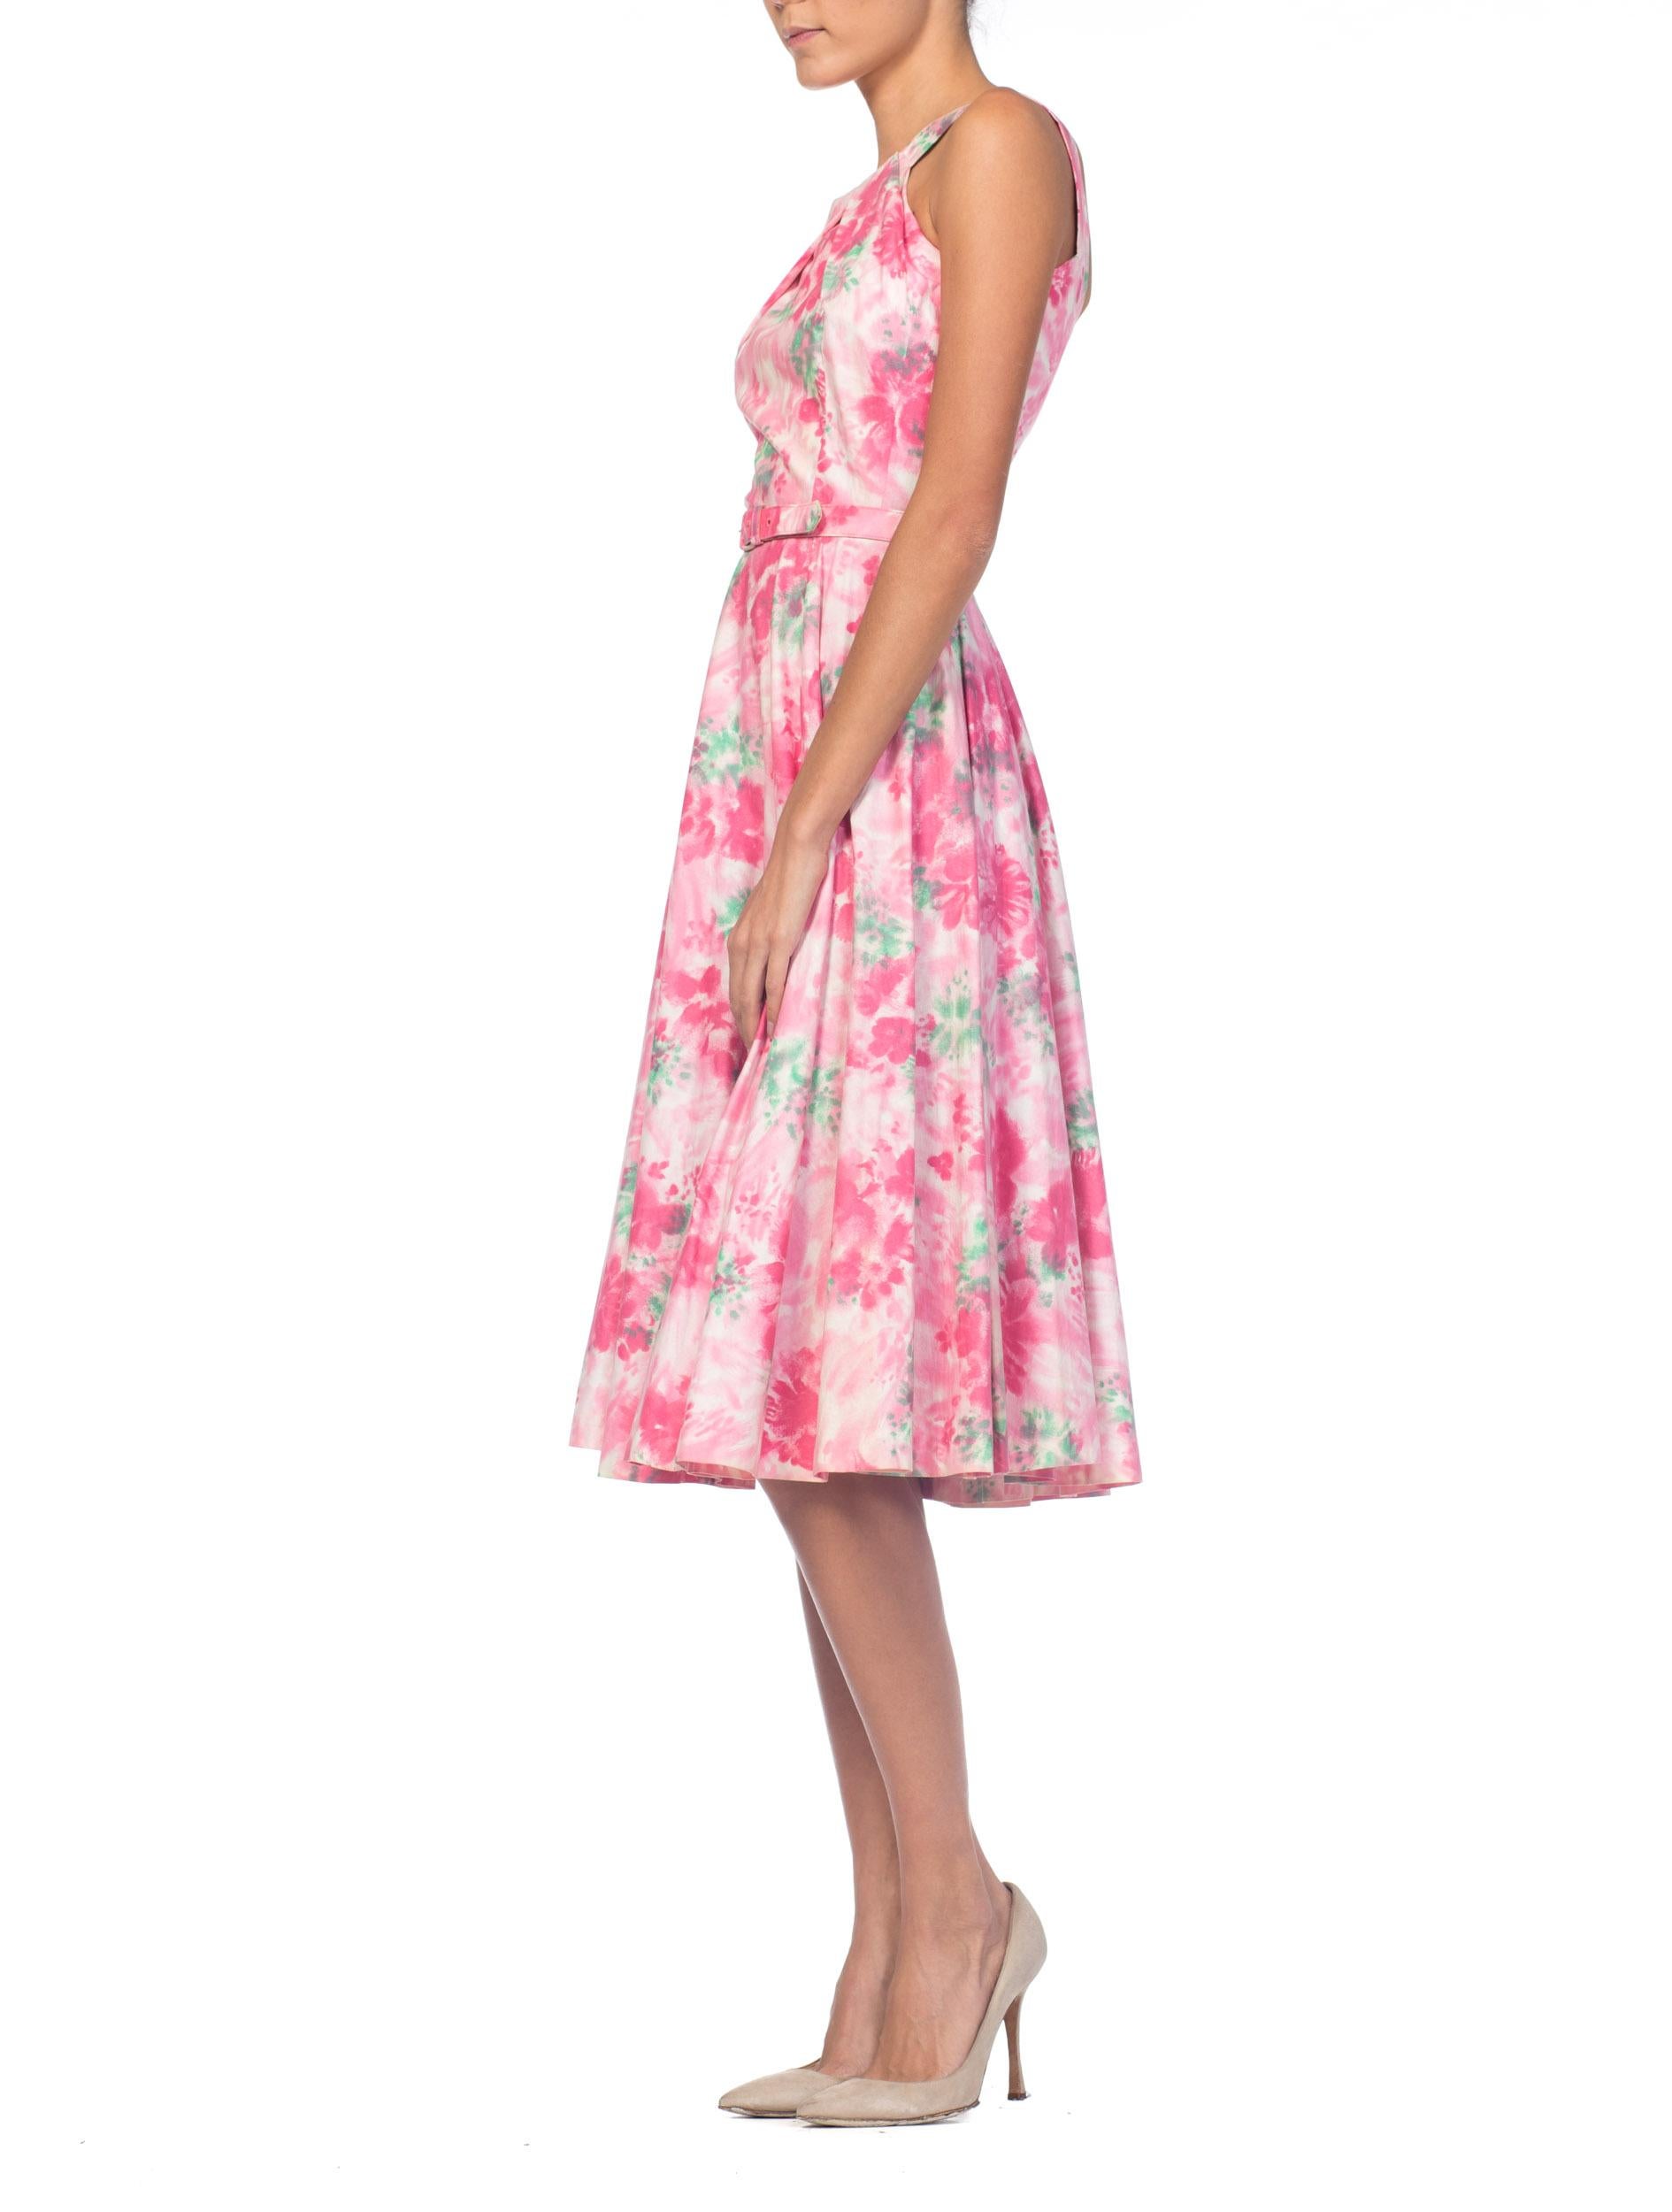 1950S Baumwolle Pastell Rosa Aquarell Floral Kreis Rock Kleid